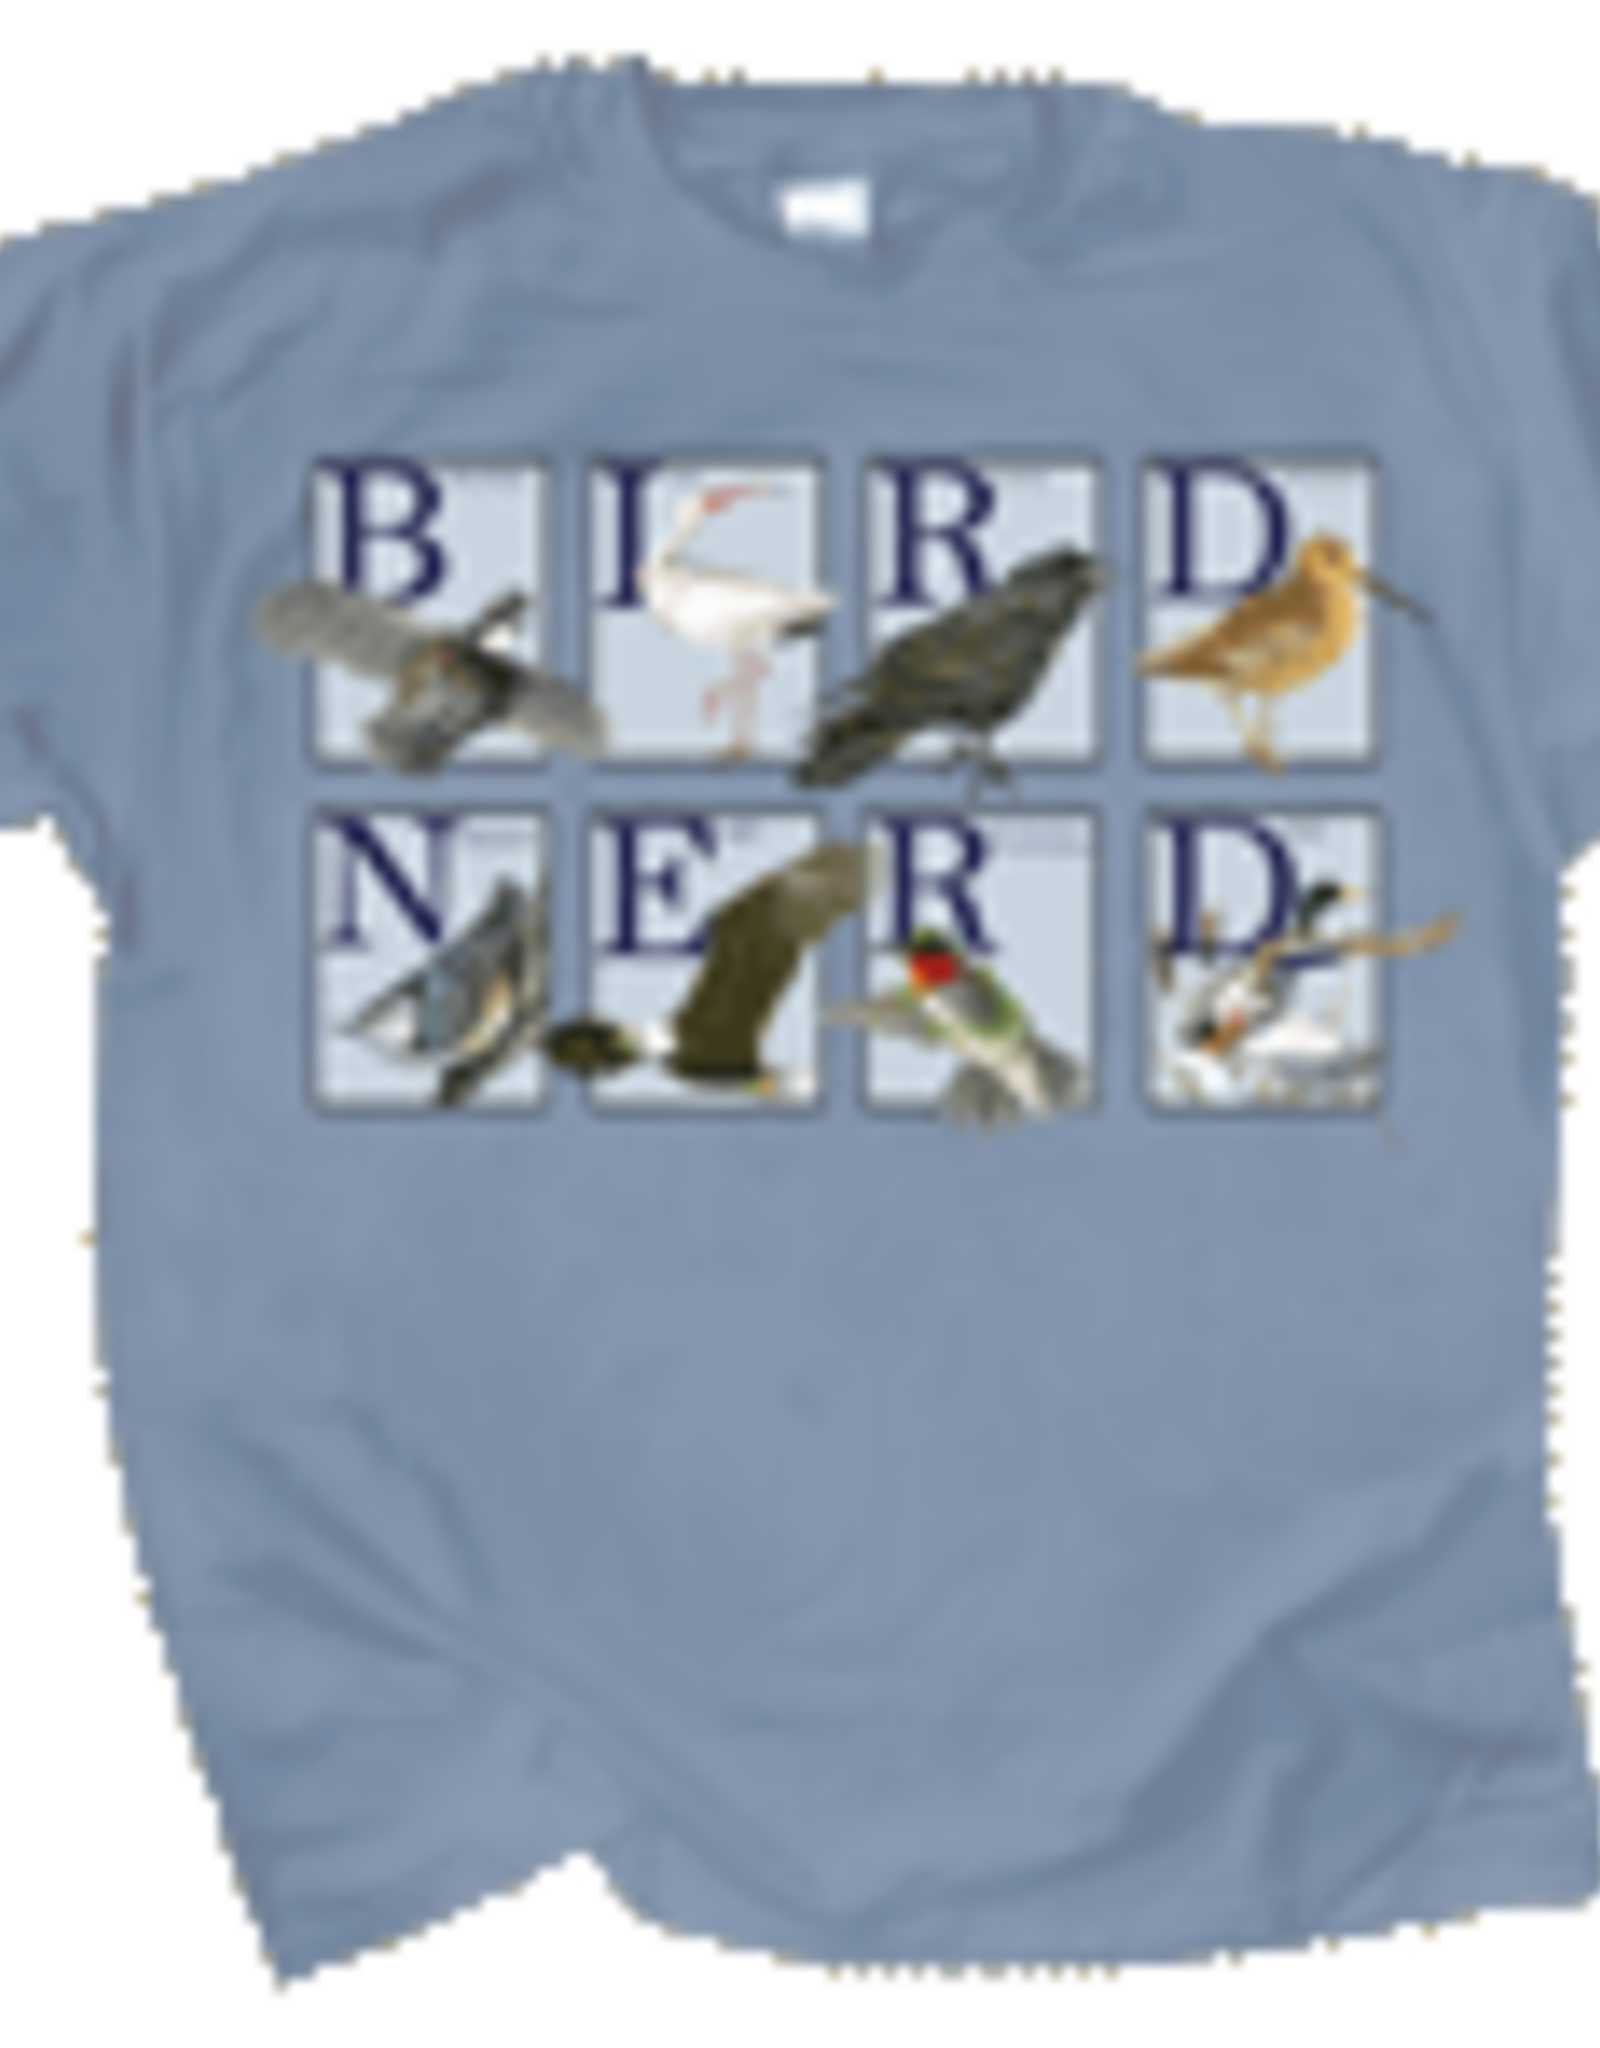 T-Shirt -  Bird Nerd